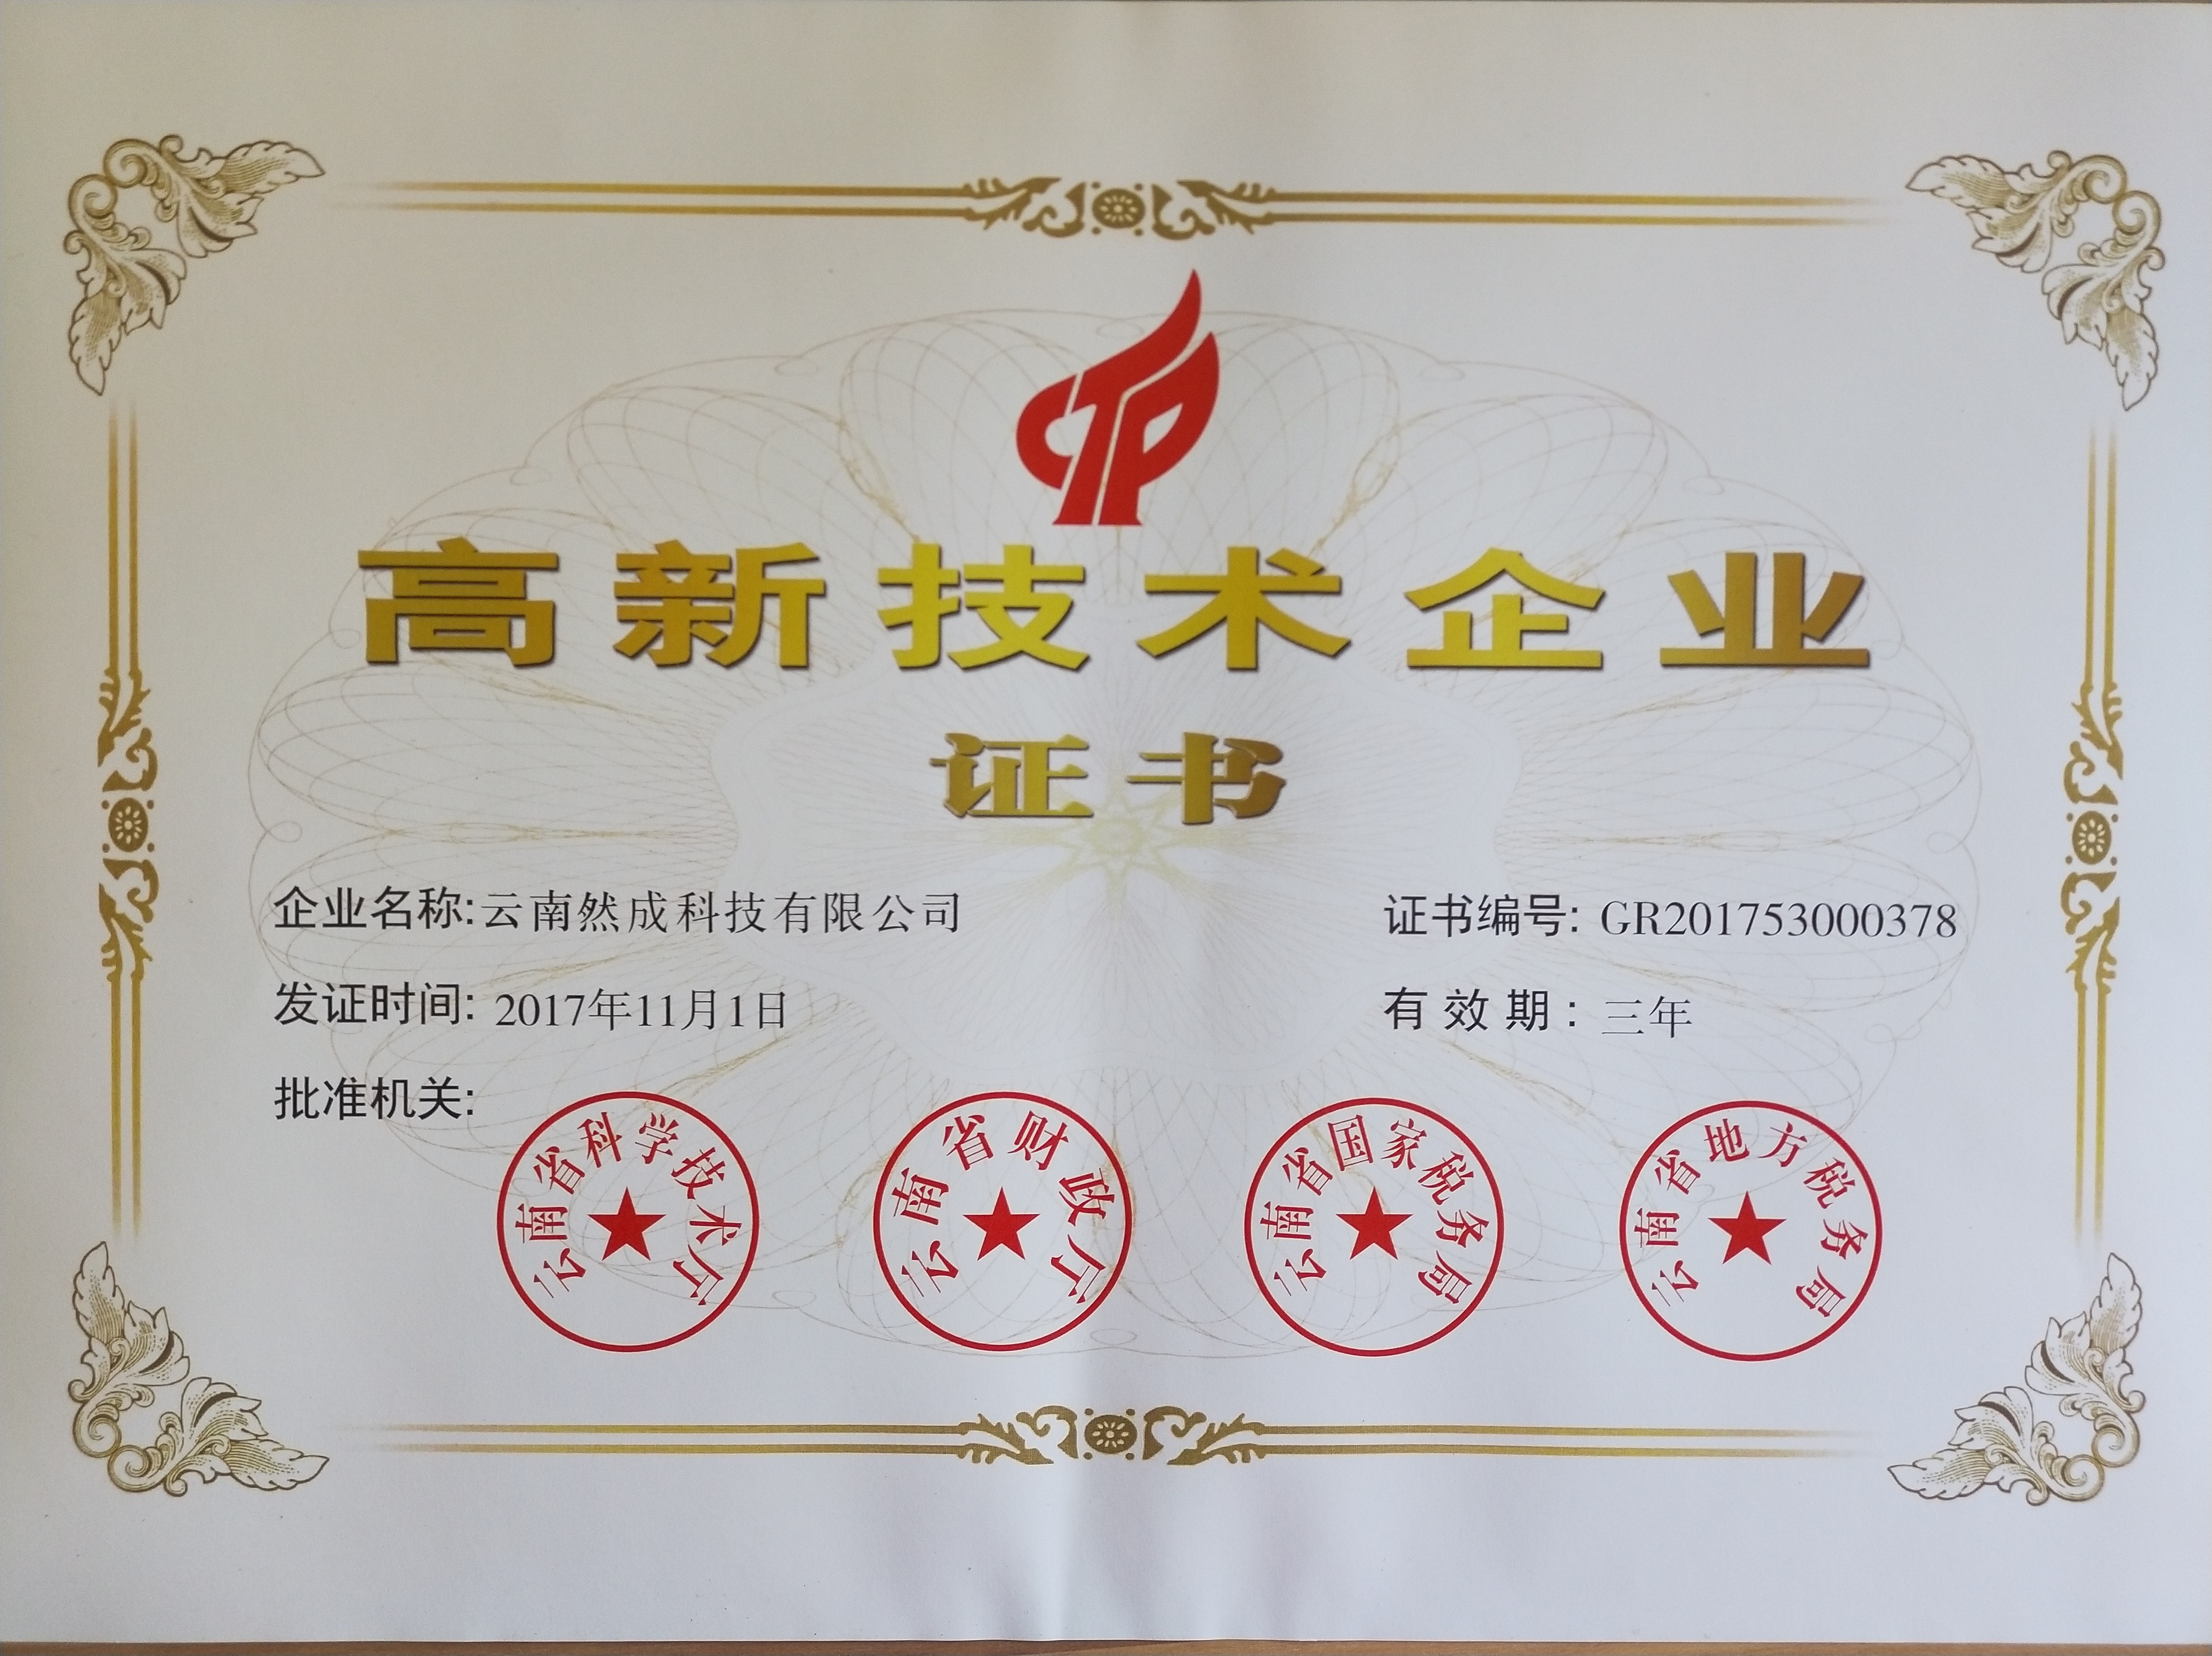 恭喜云南然成科技有限公司被评为高新技术企业